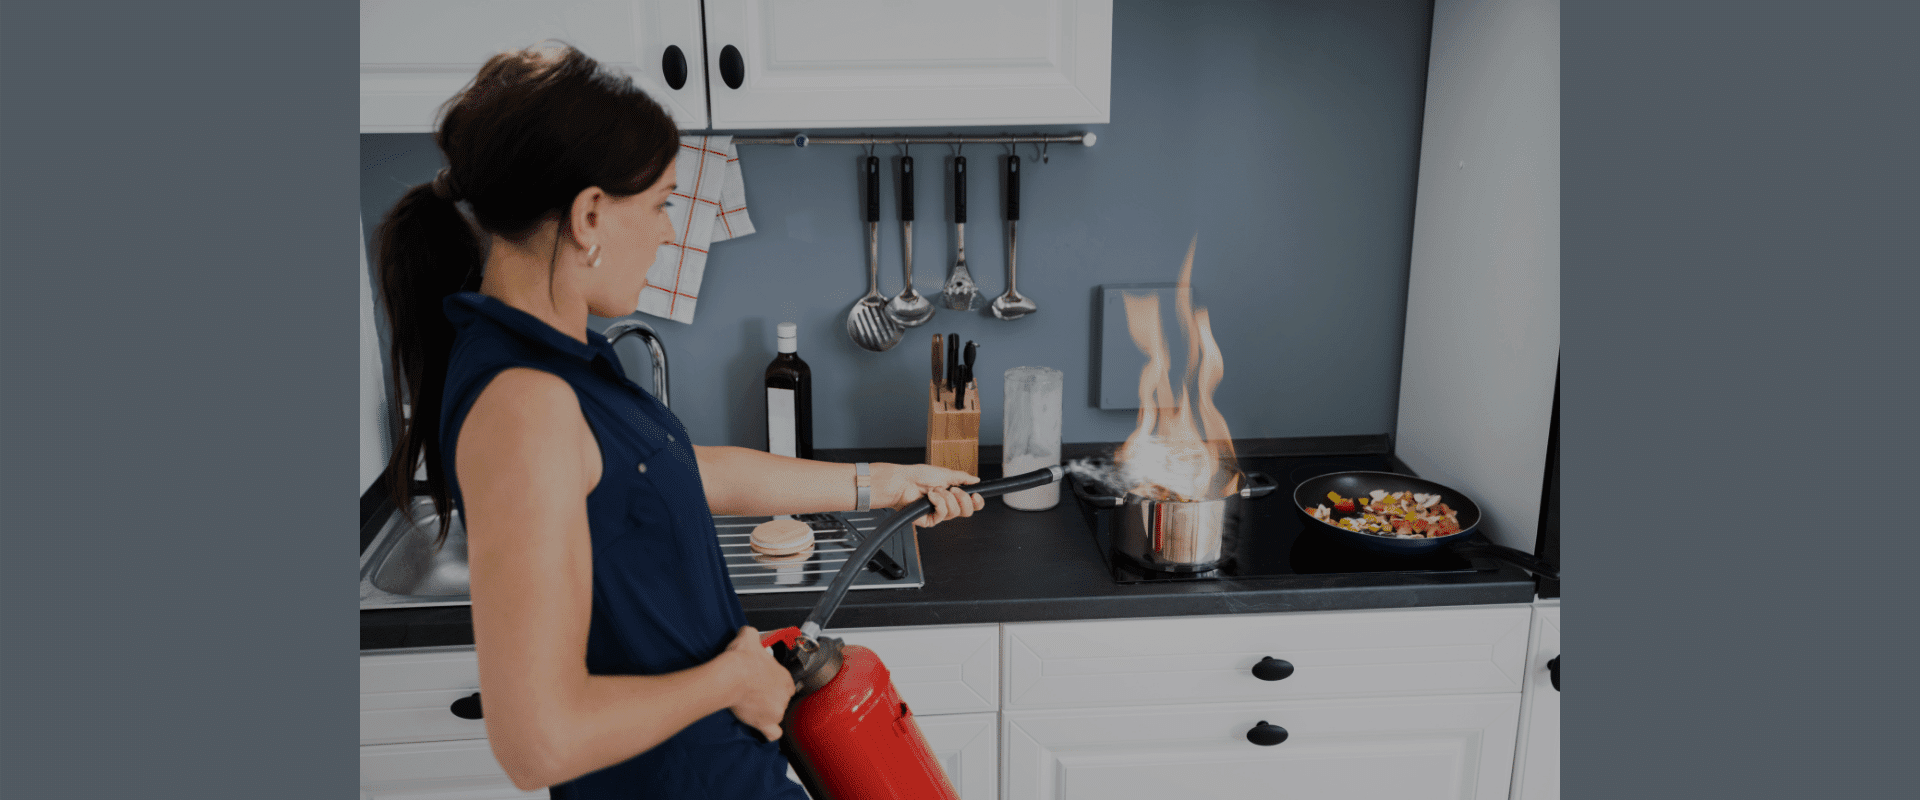 Woman extinguishing a pan fire